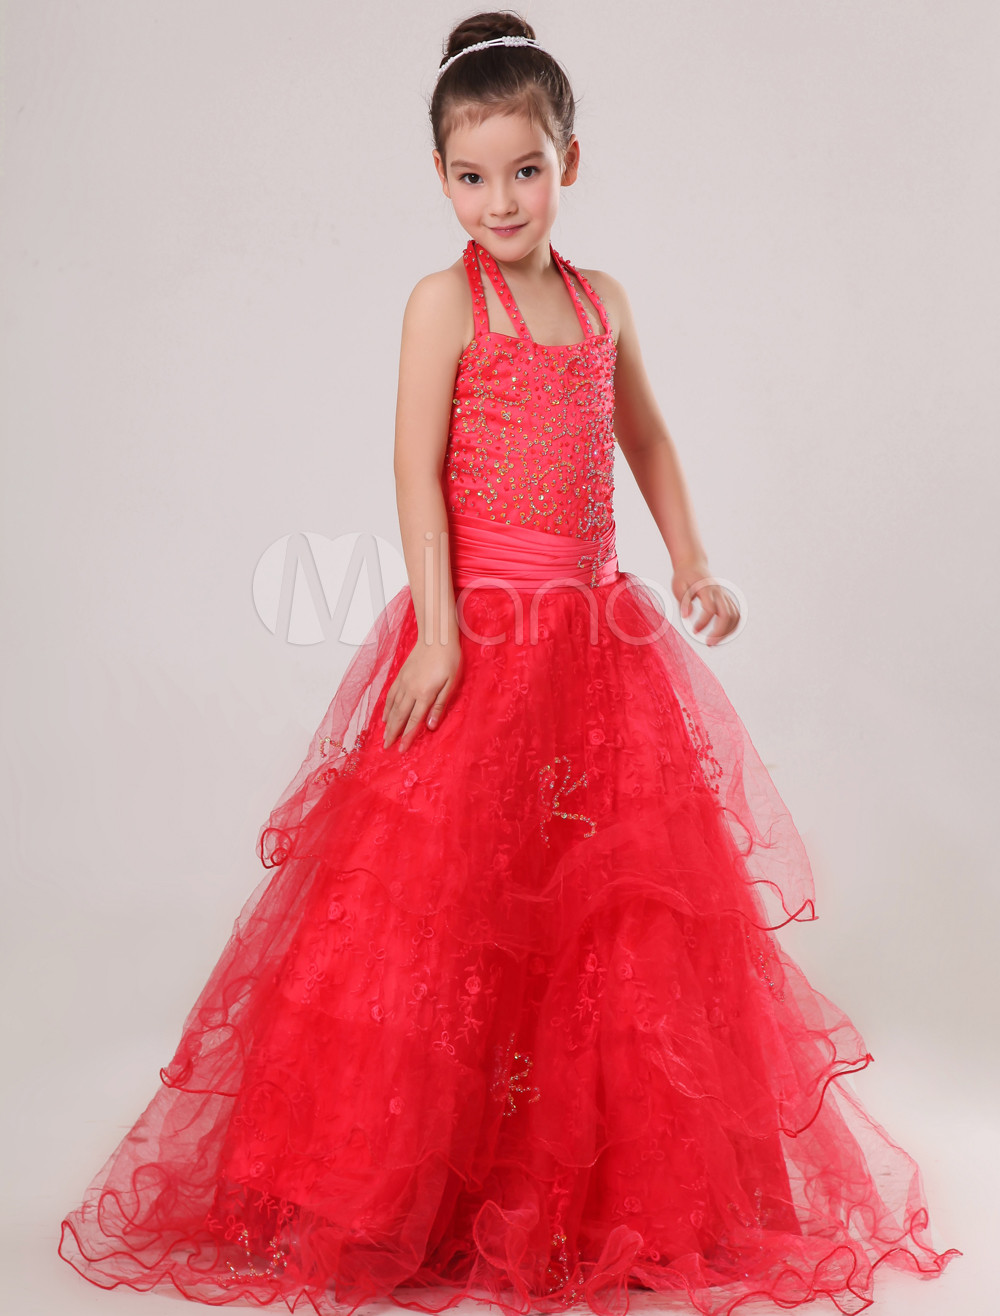 Red Halter Floor-Length Ruffles Ball Gown Girls Pageant Dress - Milanoo.com